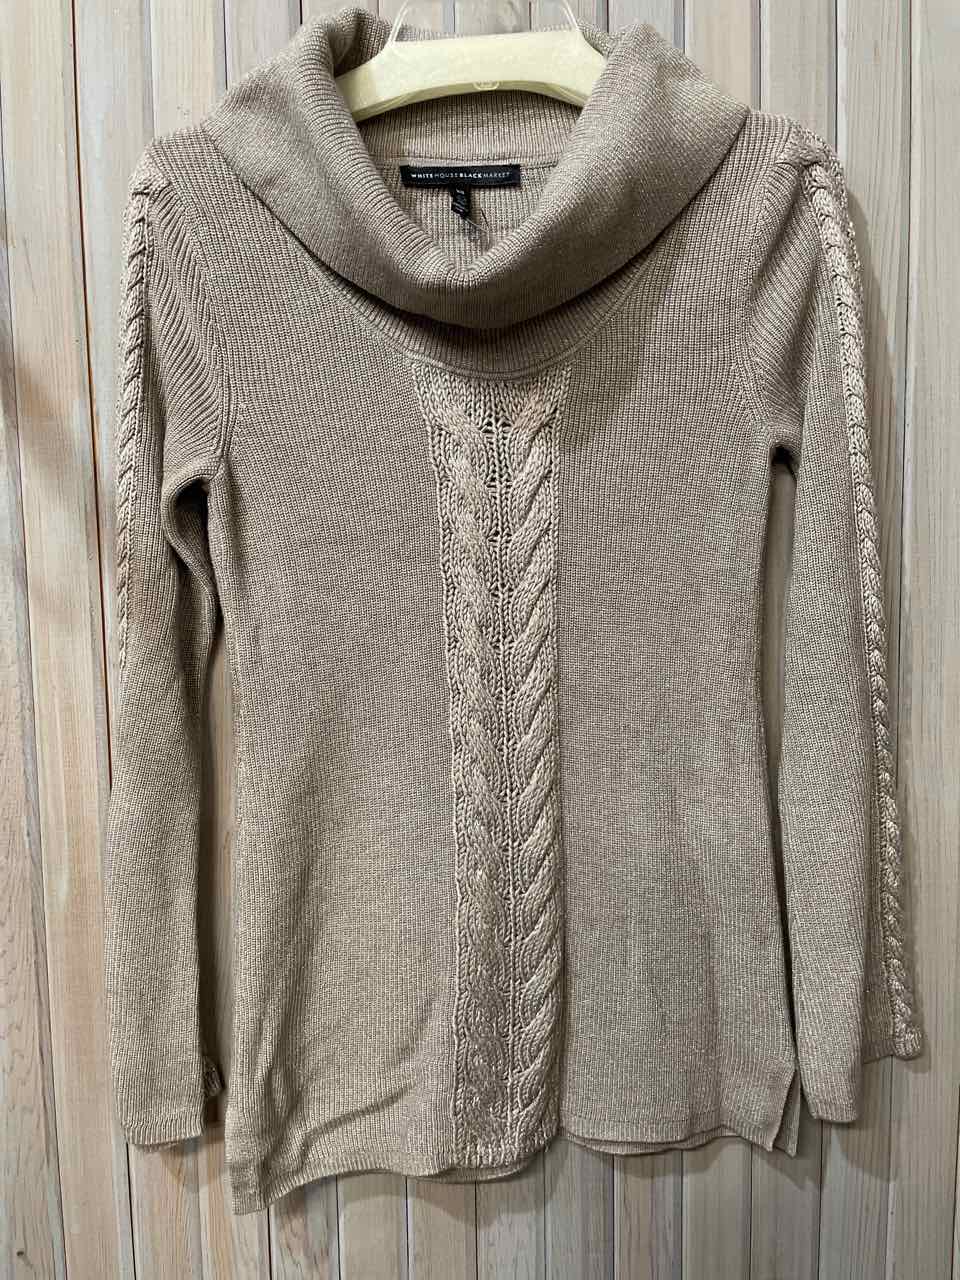 XS - WhiteHouseBlkMkt Sweater